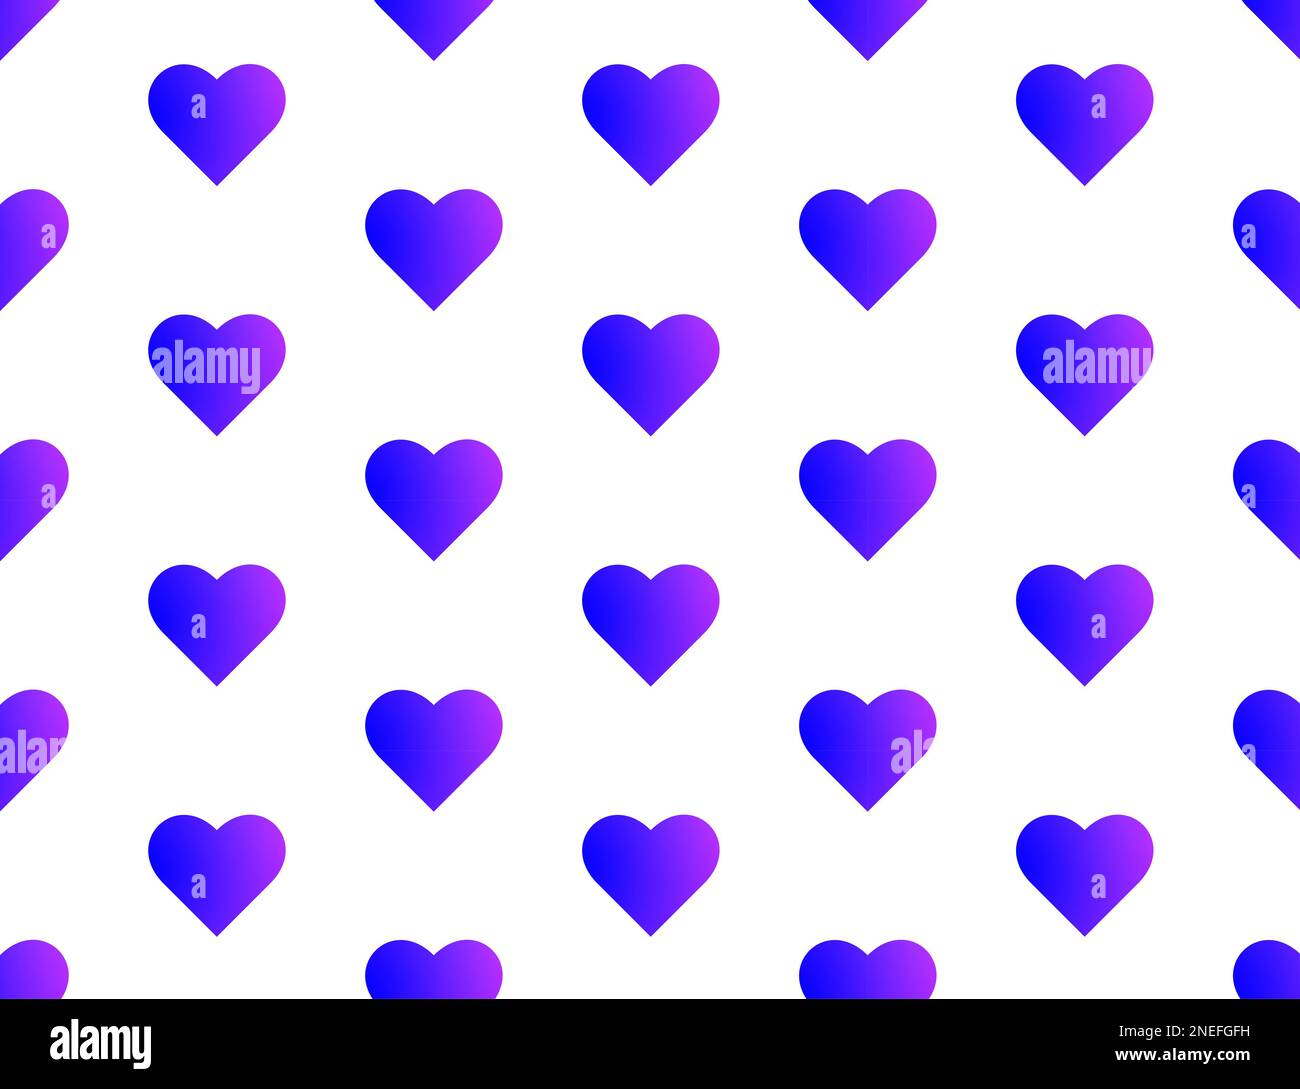 Patrón de corazones azul y púrpura sin fisuras – corazones de tamaño mediano – fondo blanco Foto de stock